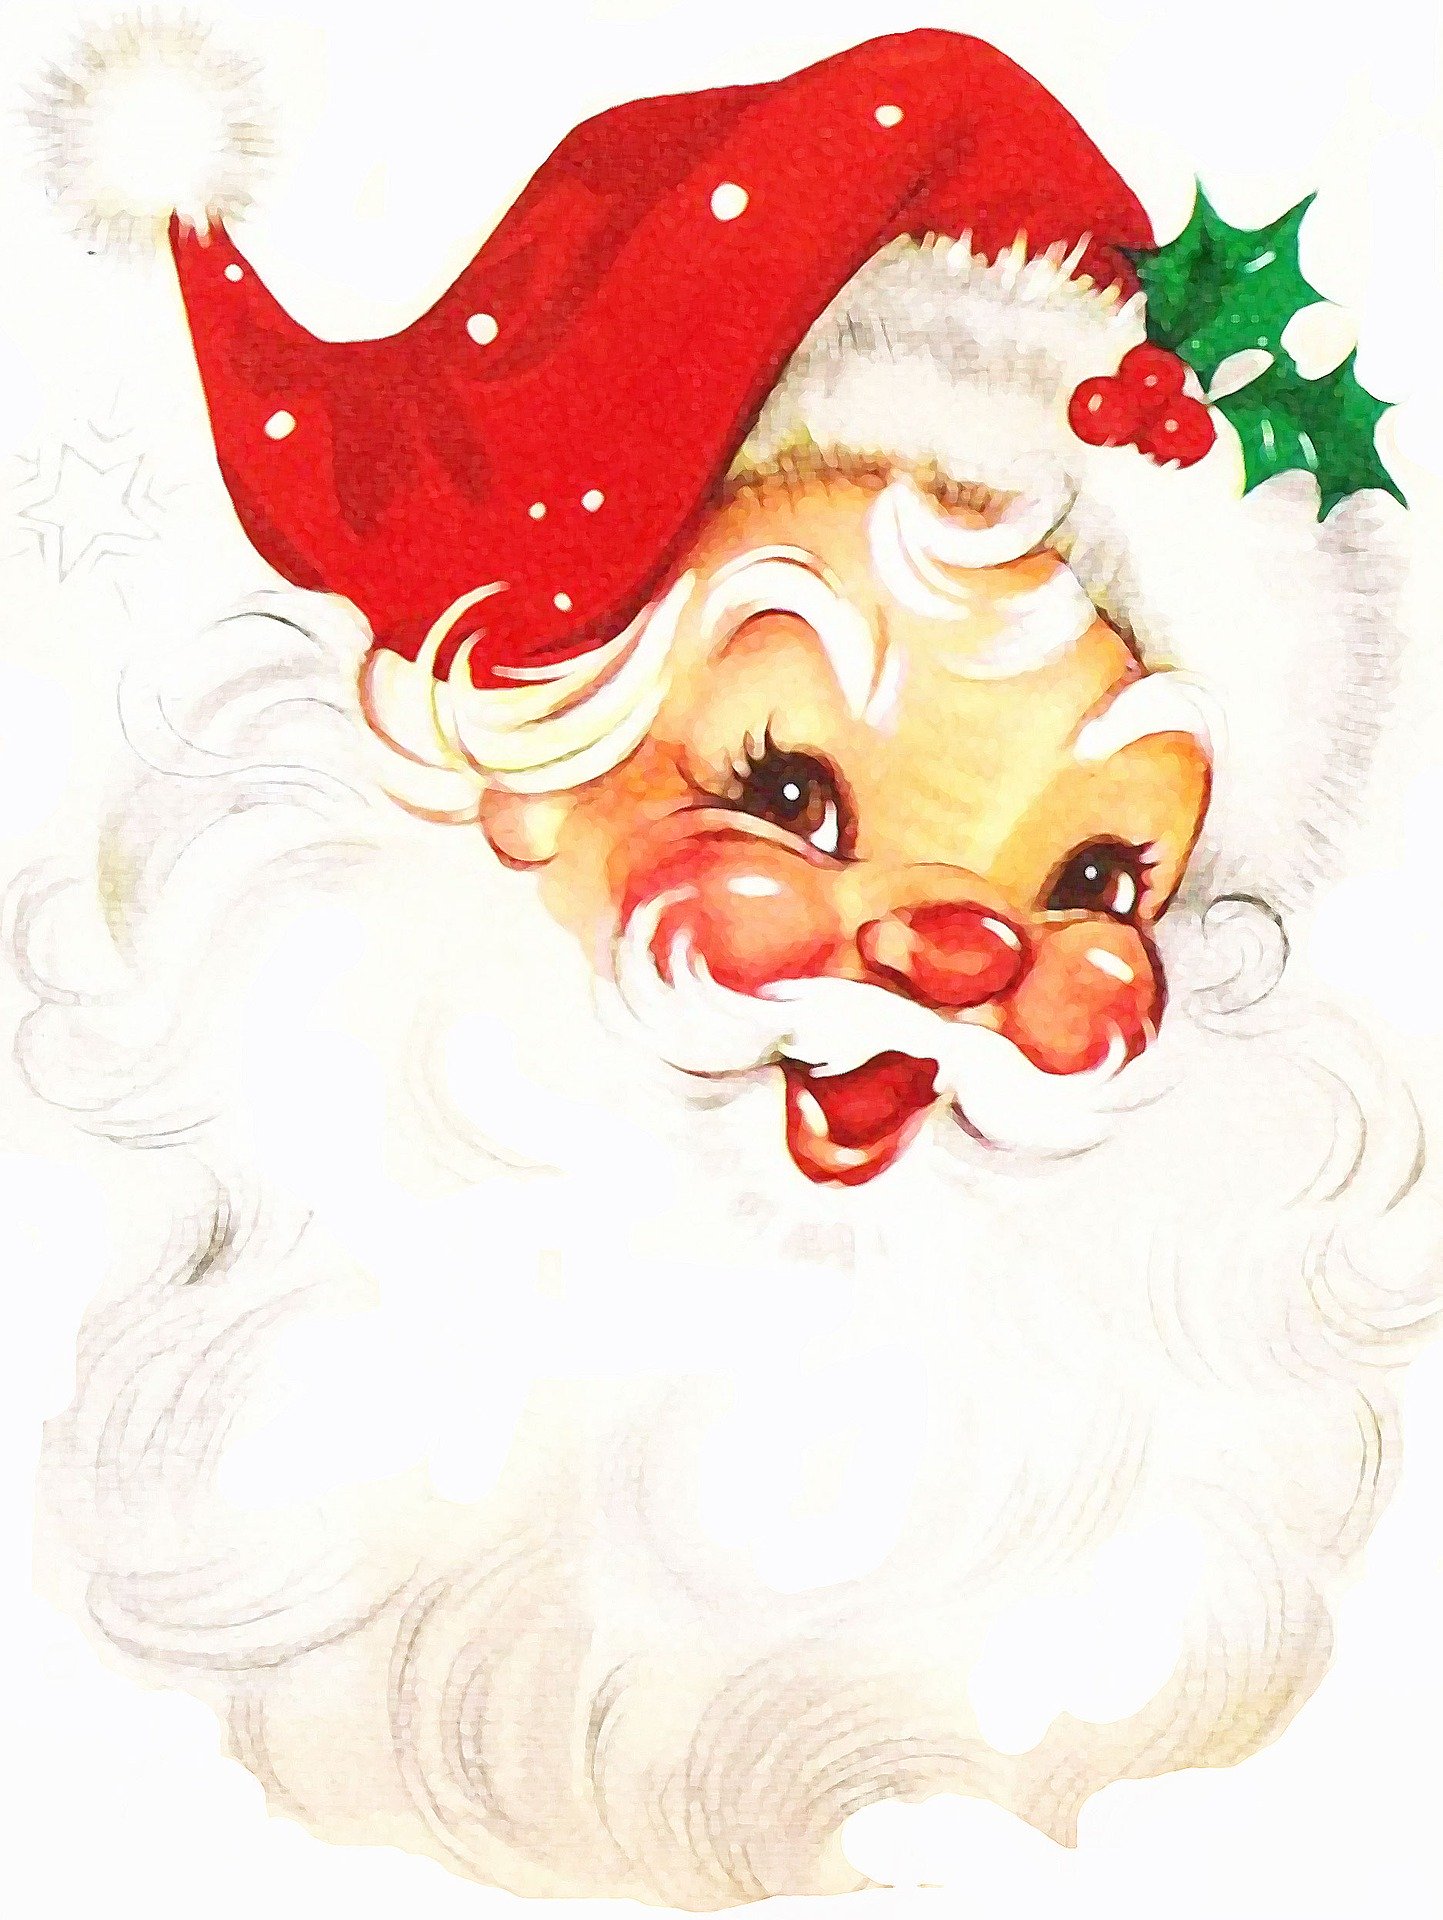 Cartoon drawing of a smiling Santa Claus